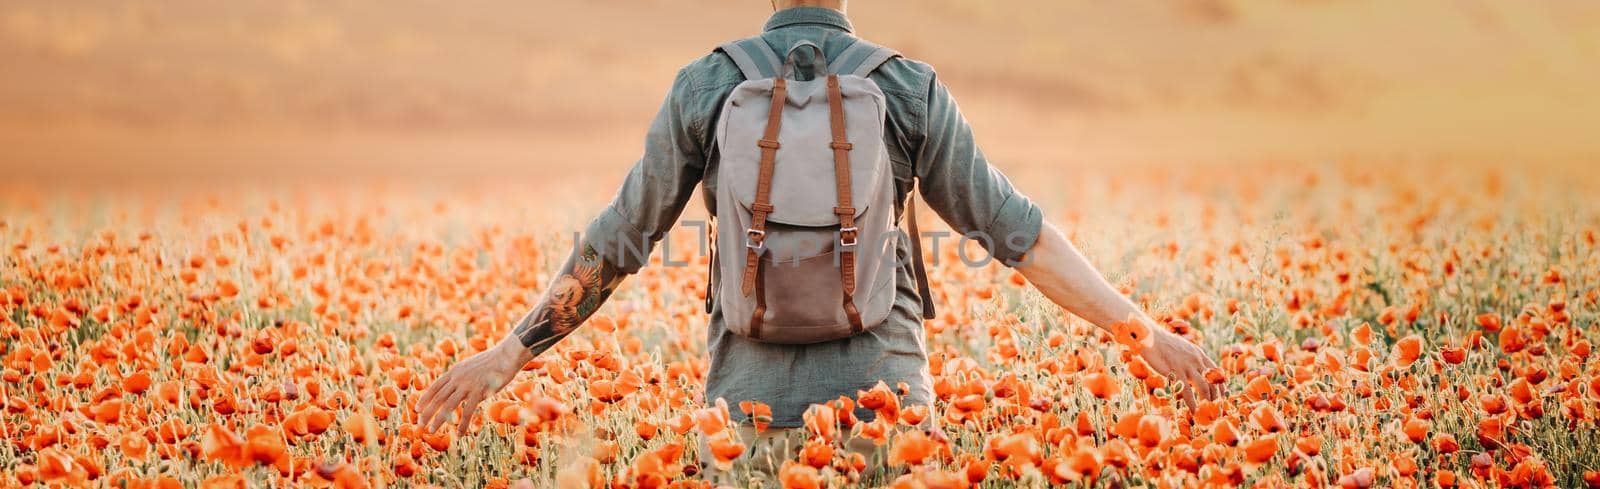 Backpacker man walking in poppies flower meadow. by alexAleksei